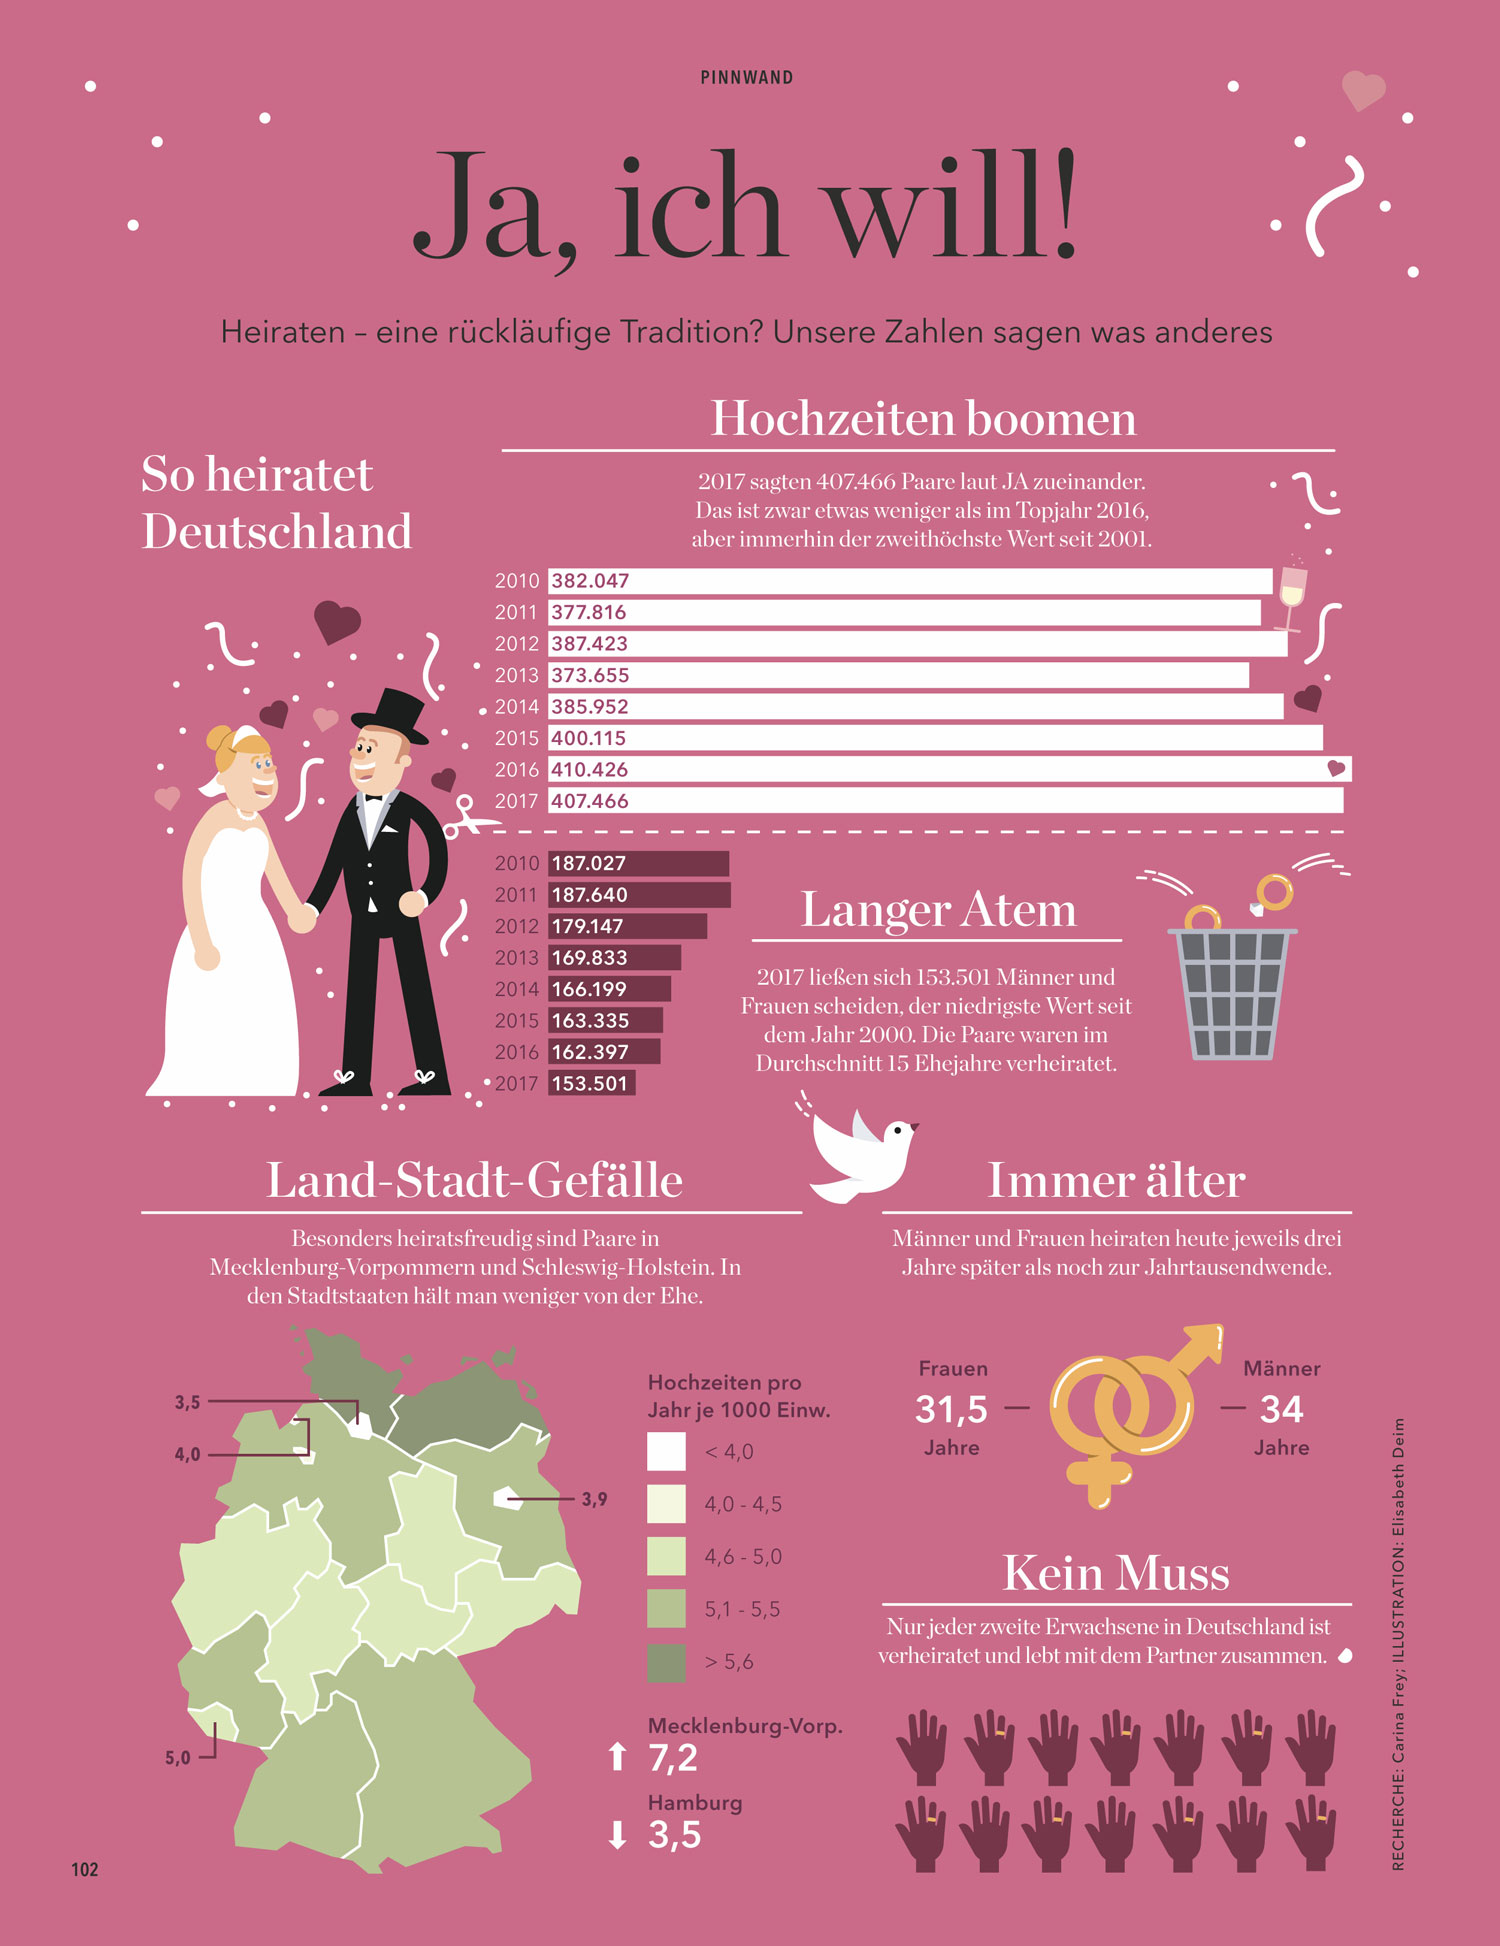 kann man als tourist in deutschland heiraten